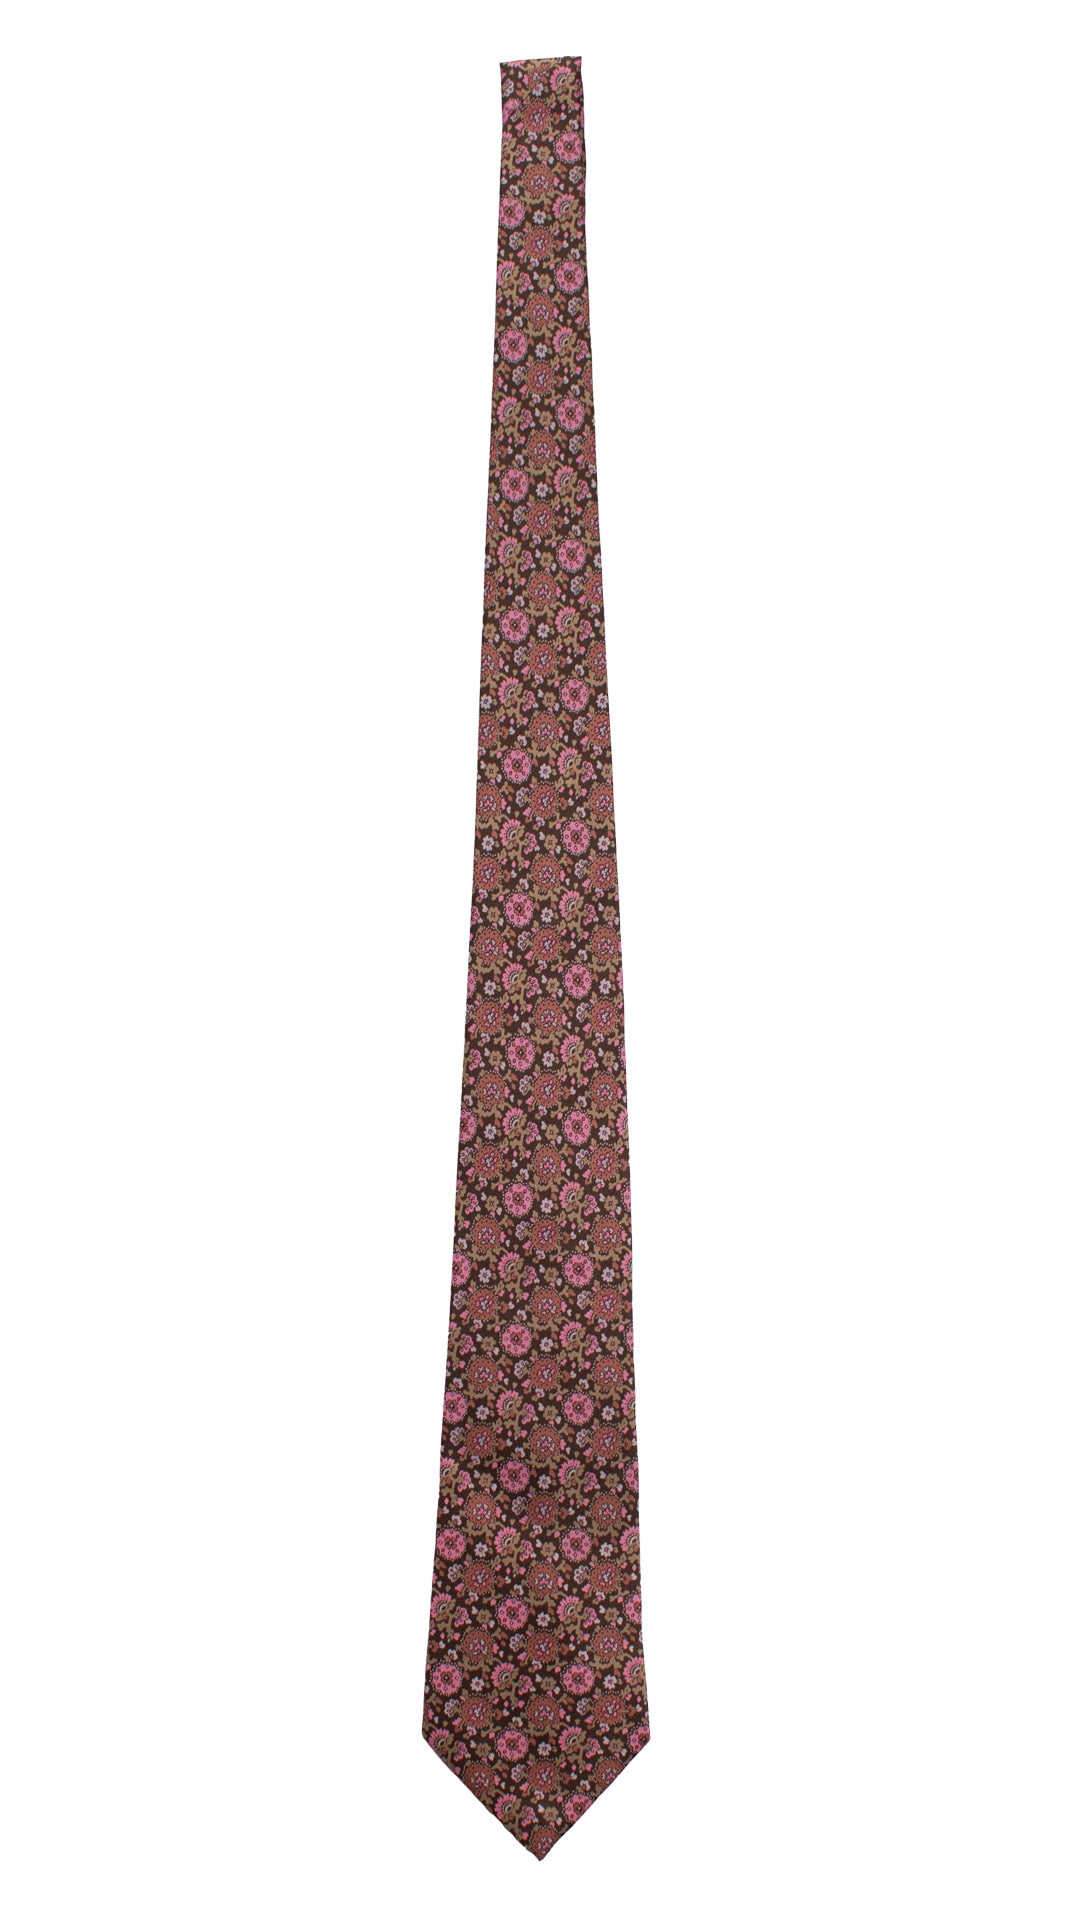 Cravatta Vintage in Twill di Seta Marrone A Fiori Rosa Rosa Antico Beige CV768 Intera